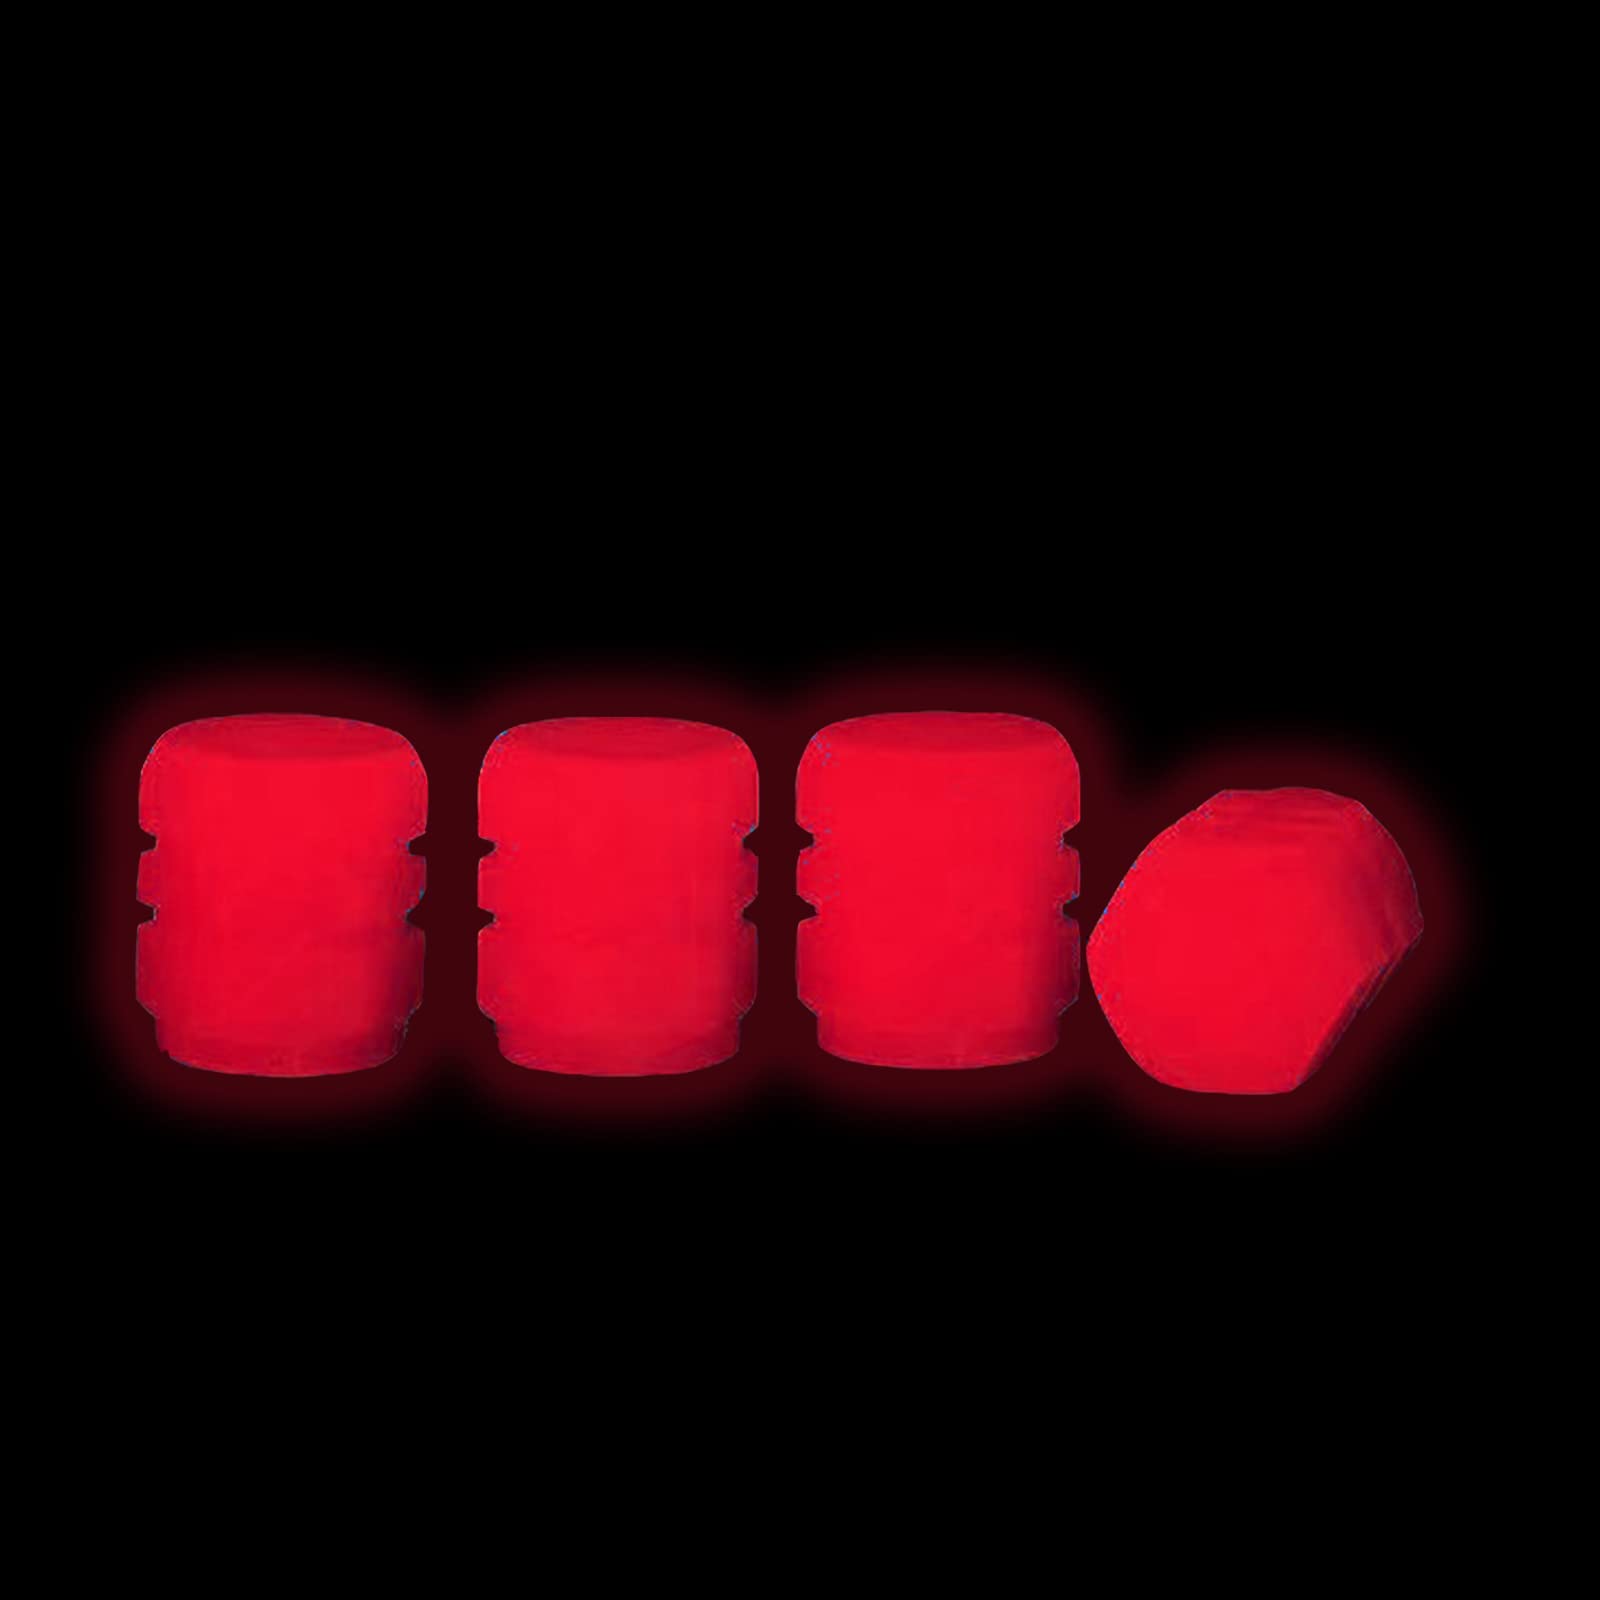 4 Stück Staubschutzkappen Autoreifen, Universal Fluoreszierende Reifenventilkappen Mode Leuchtende Auto Fahrrad Staubschutzkappen Für Autos LKWs Motorräder SUVs Fahrräder Leuchten im Dunkeln (Rot) von MOREASE